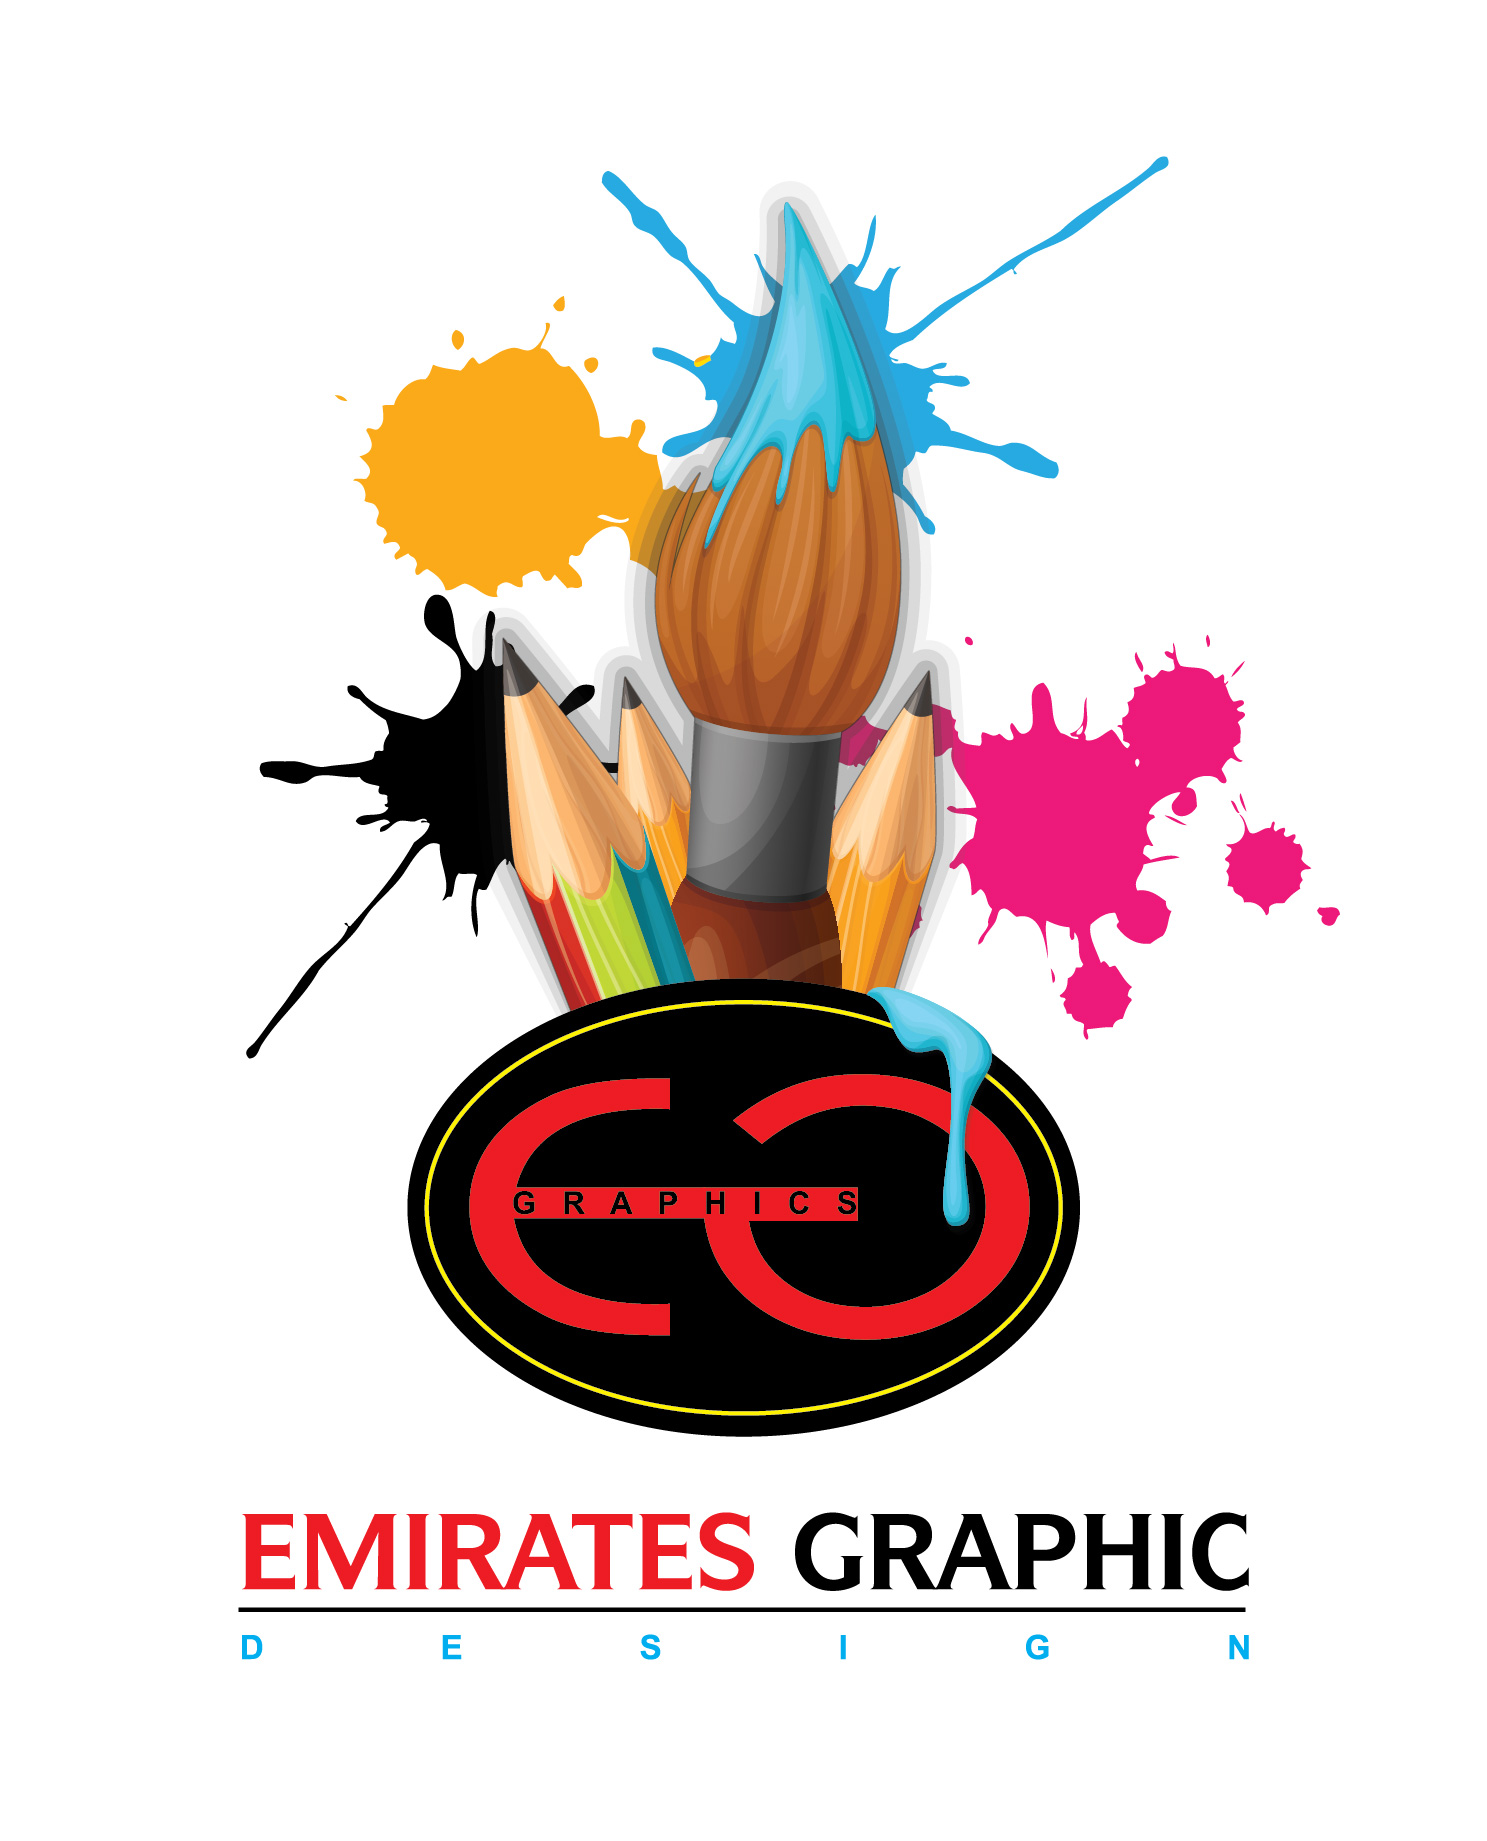 Emirate Graphic